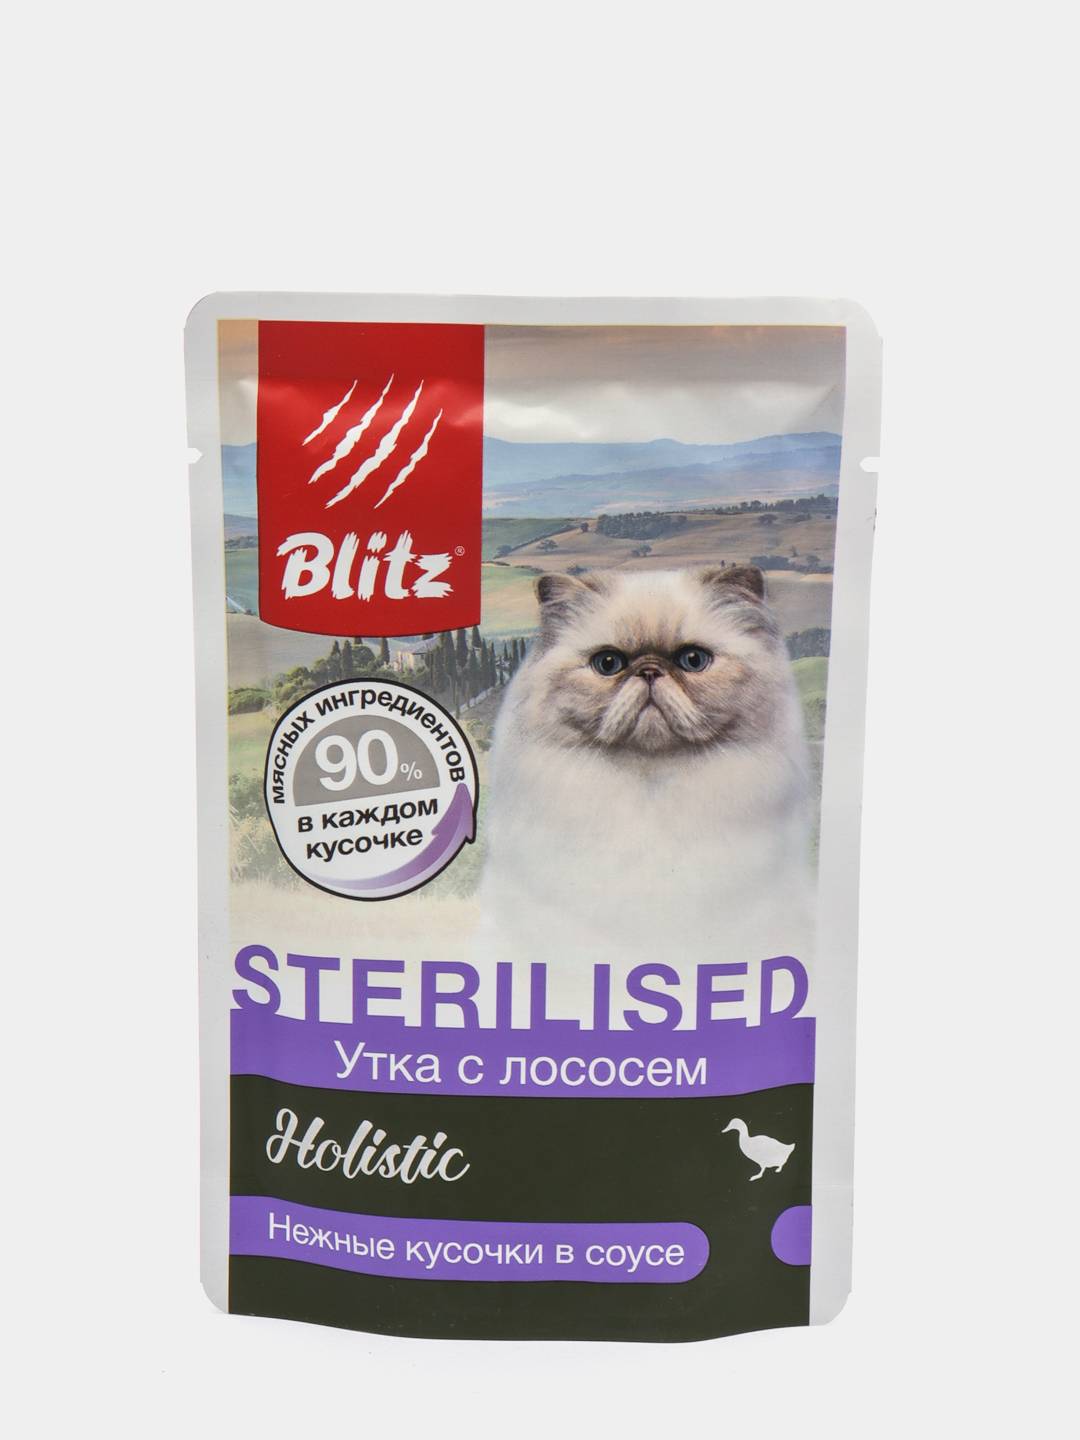 Корма блиц холистик. Blitz Holistic «утка с лососем». Blitz Holistic для кошек. Blitz корм для стерилизованных кошек. Холистик корм влажный блитз для кошек.